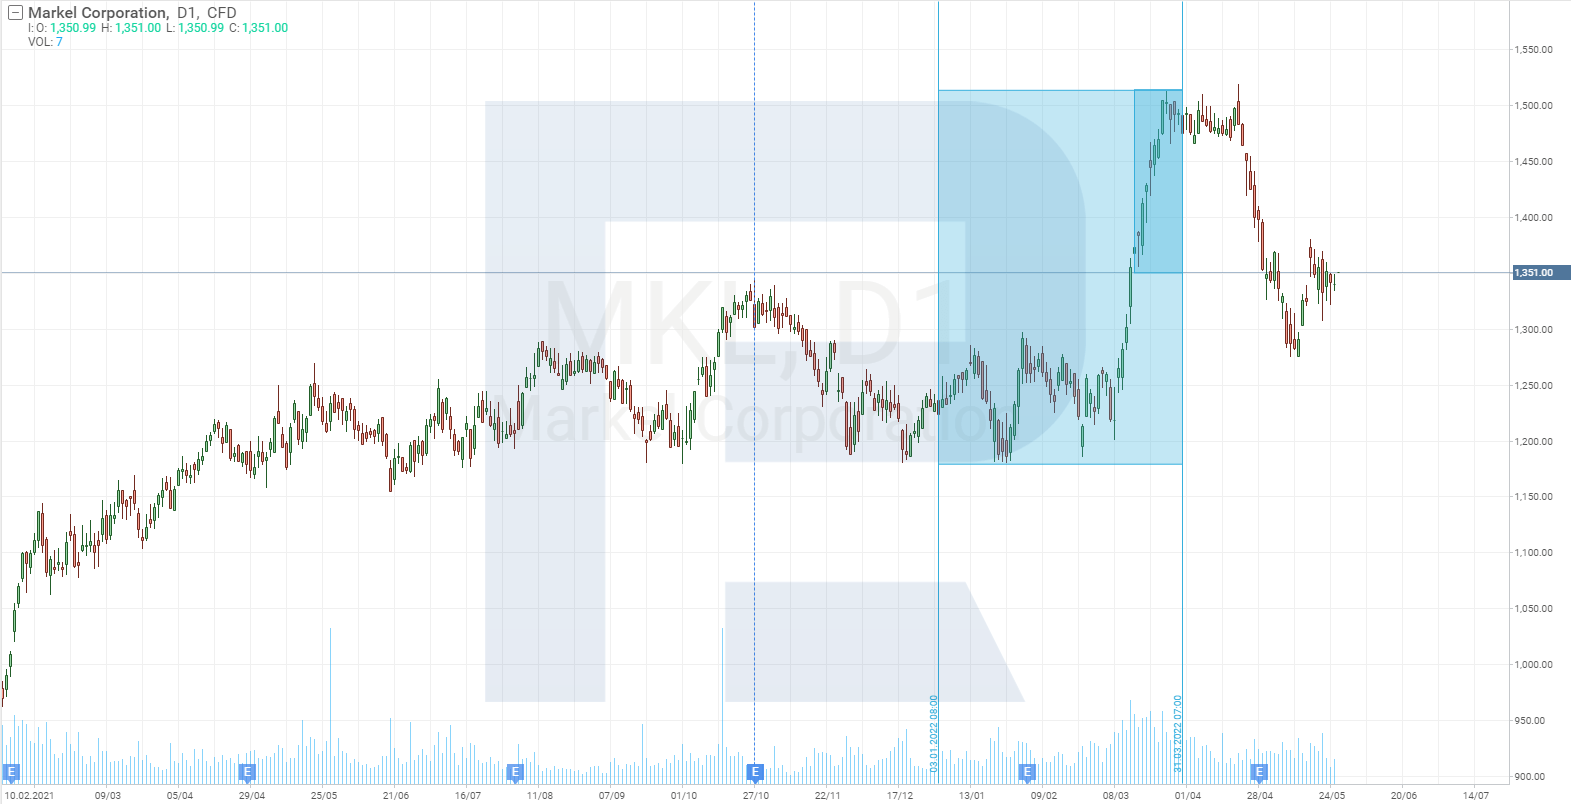 Gráfico del precio de las acciones de Markel Corporation